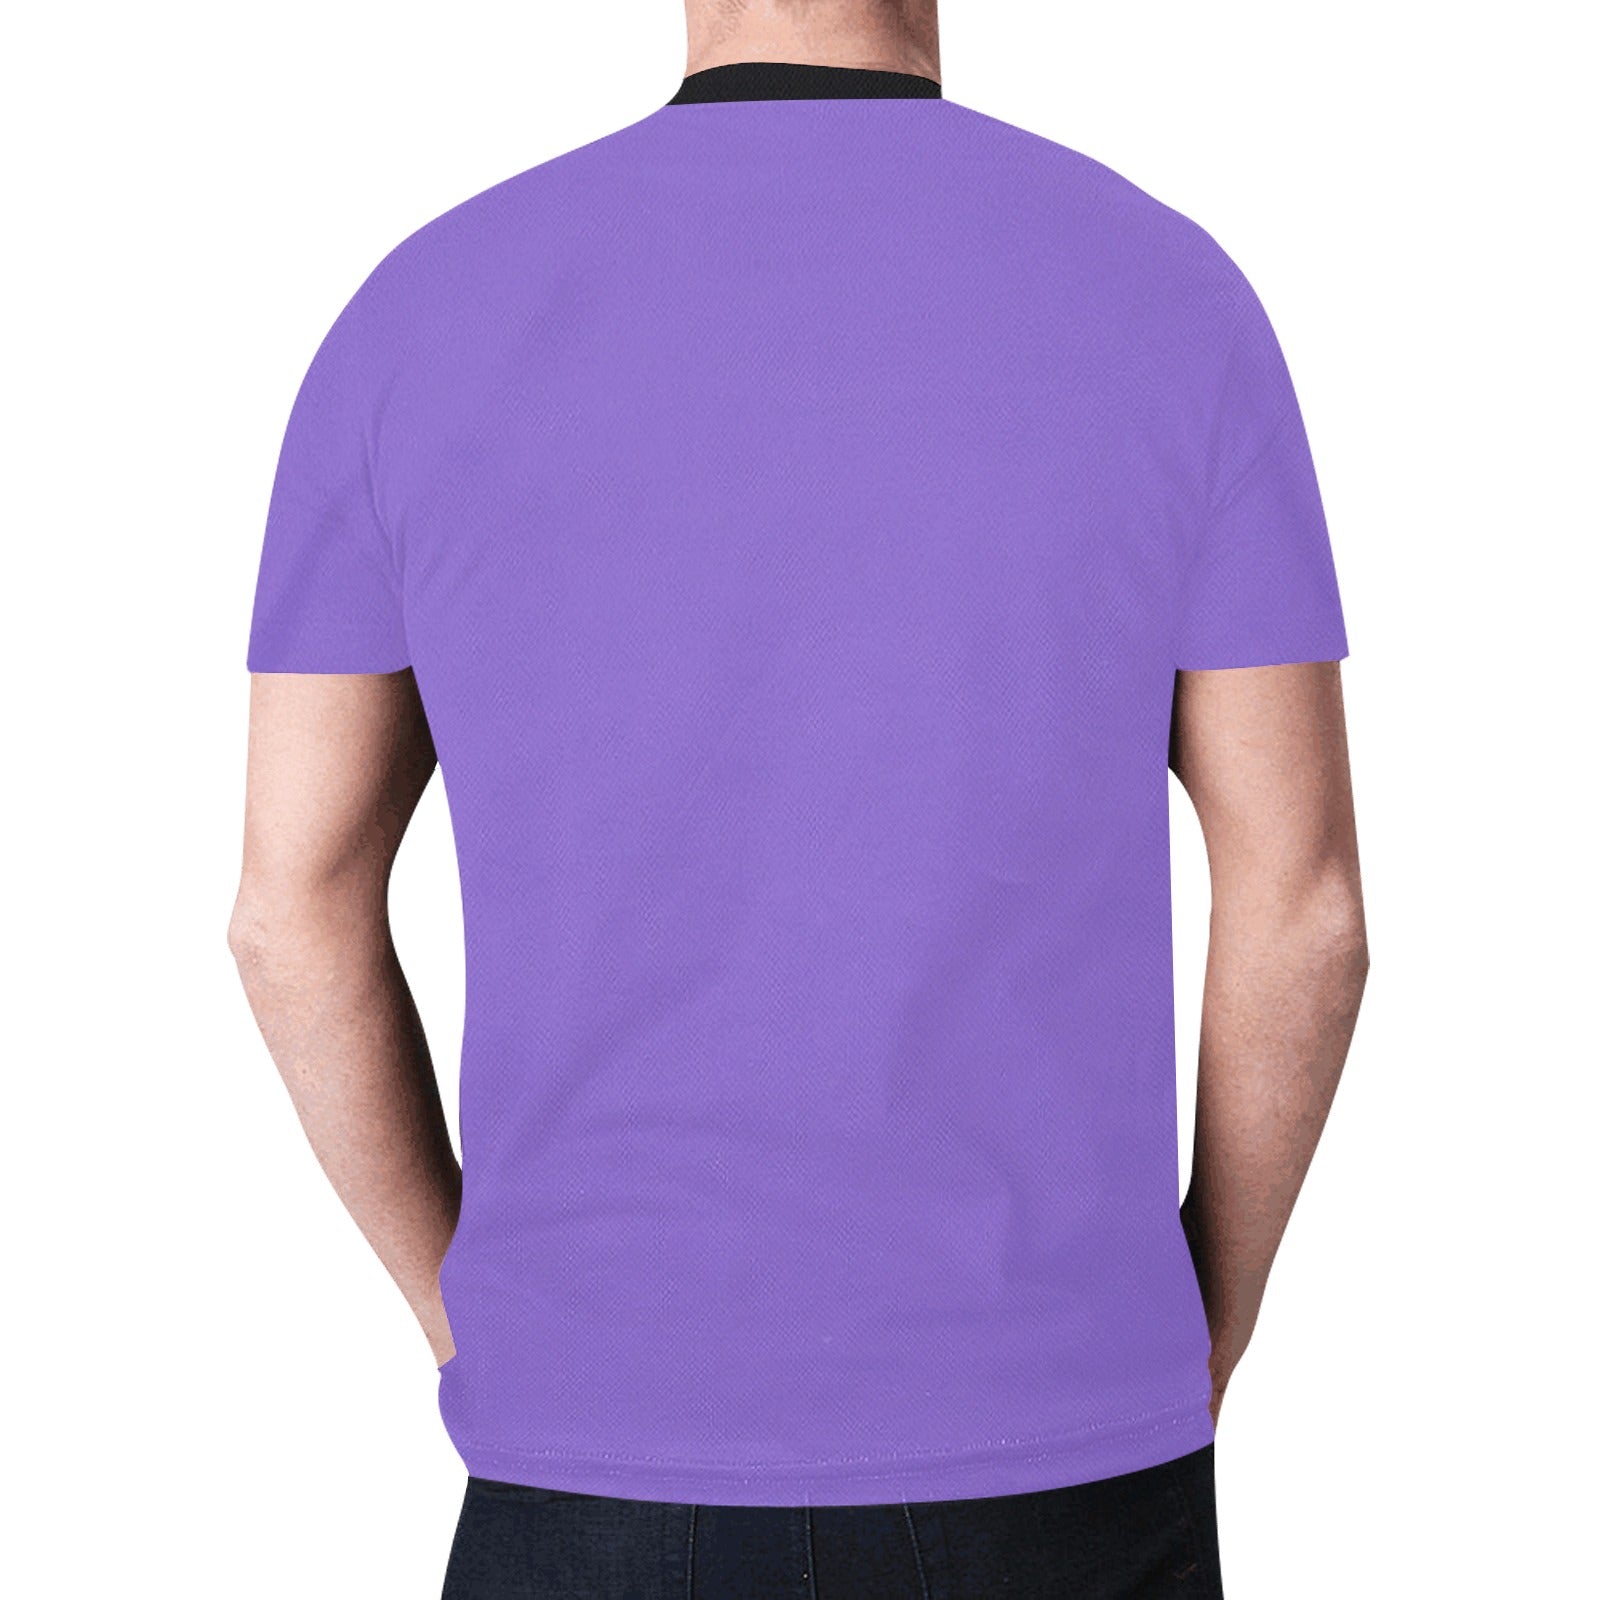 Bear Spirit Guide (Purple) T-shirt for Men